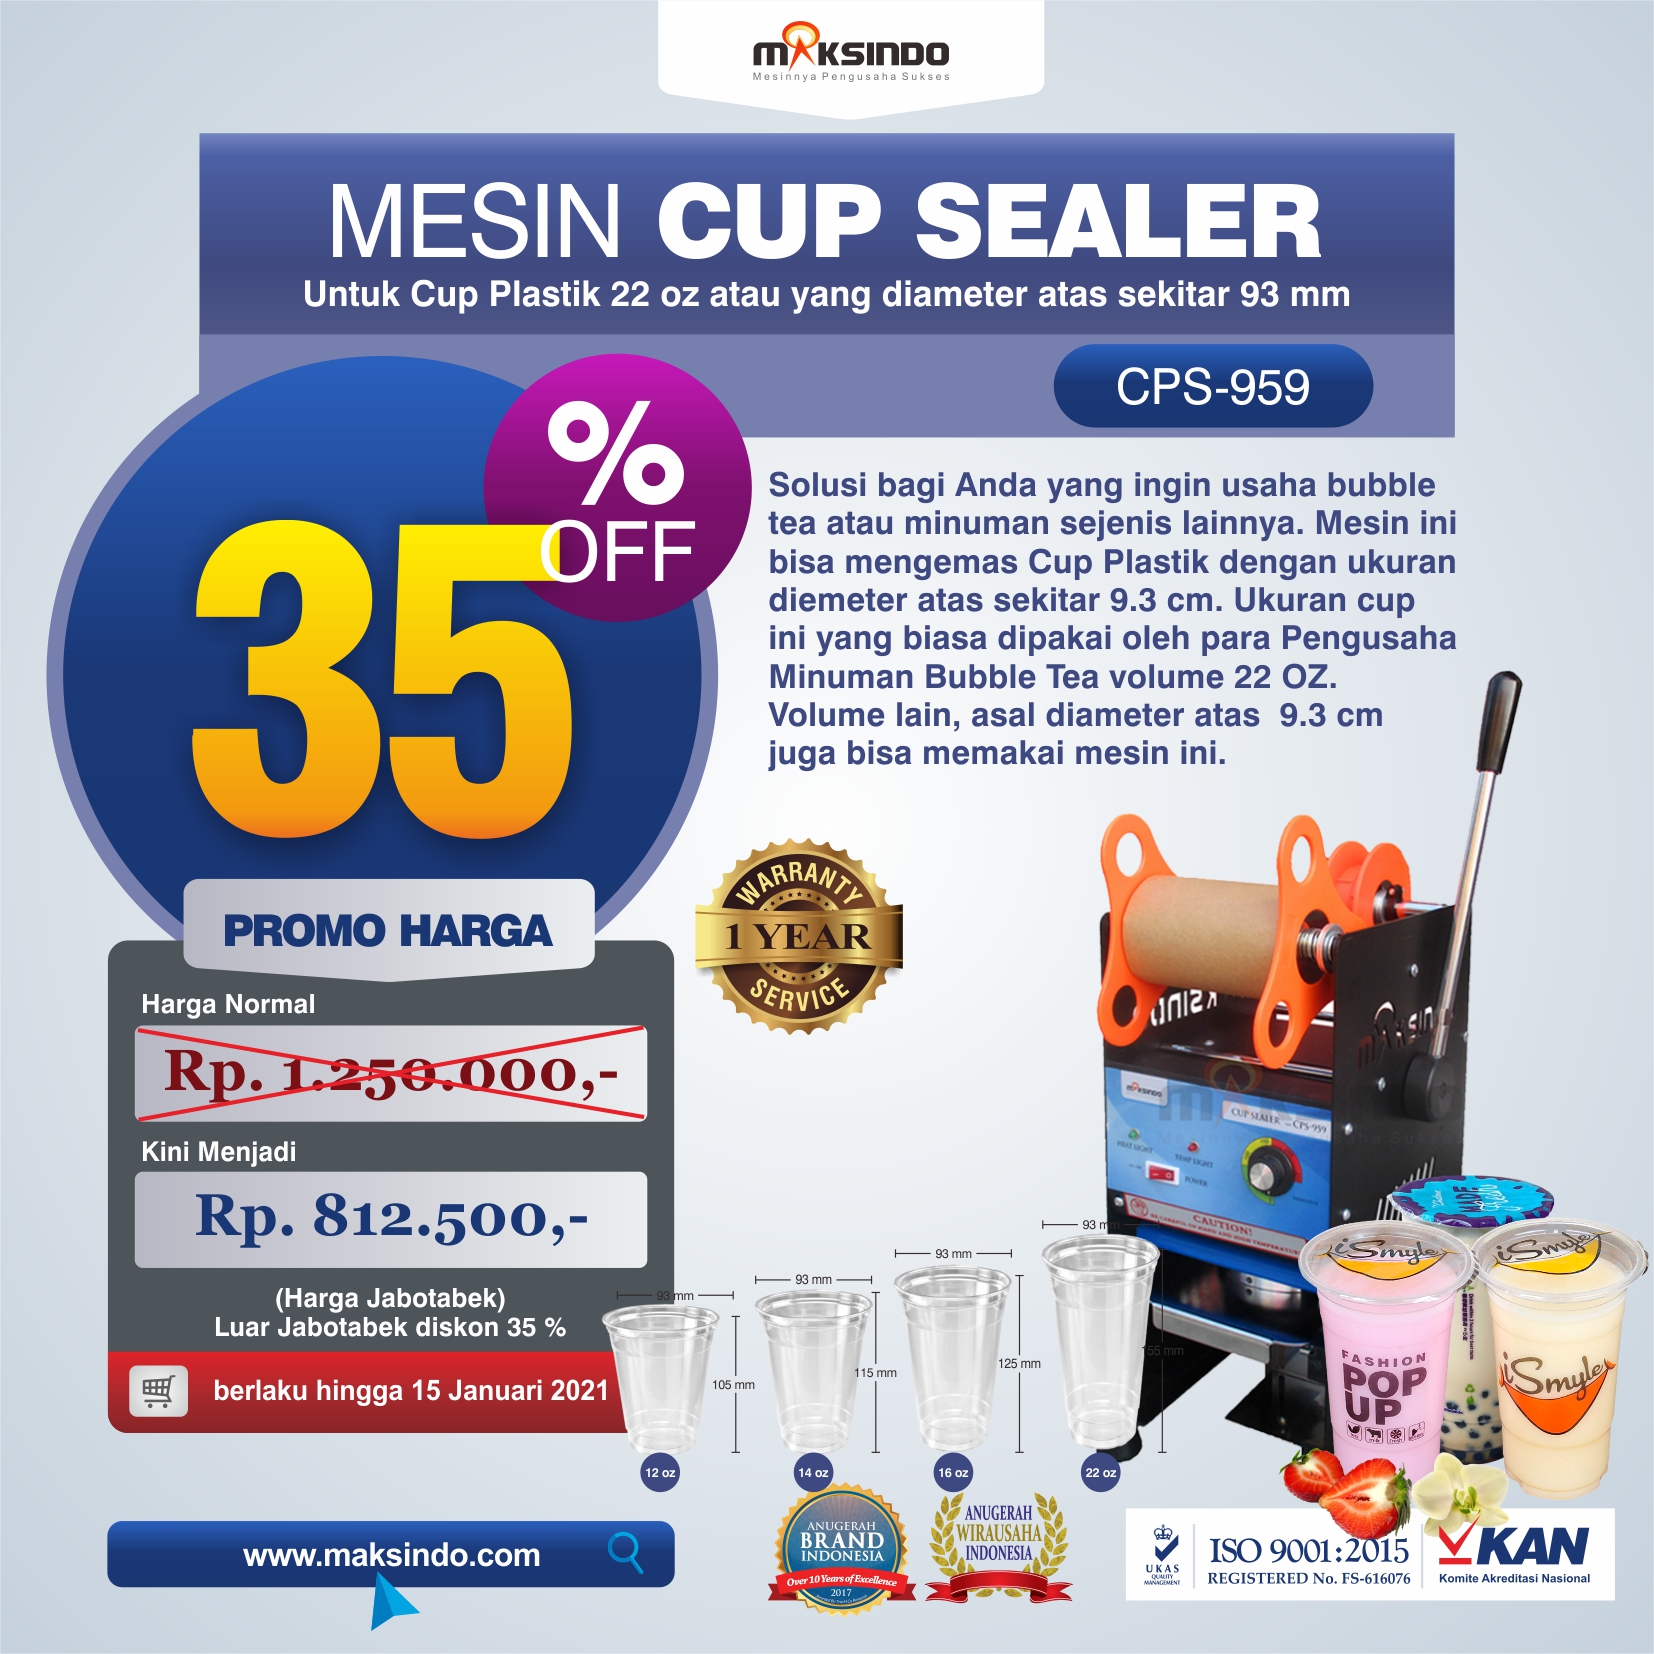 Jual Mesin Cup Sealer CPS-959 Di Malang